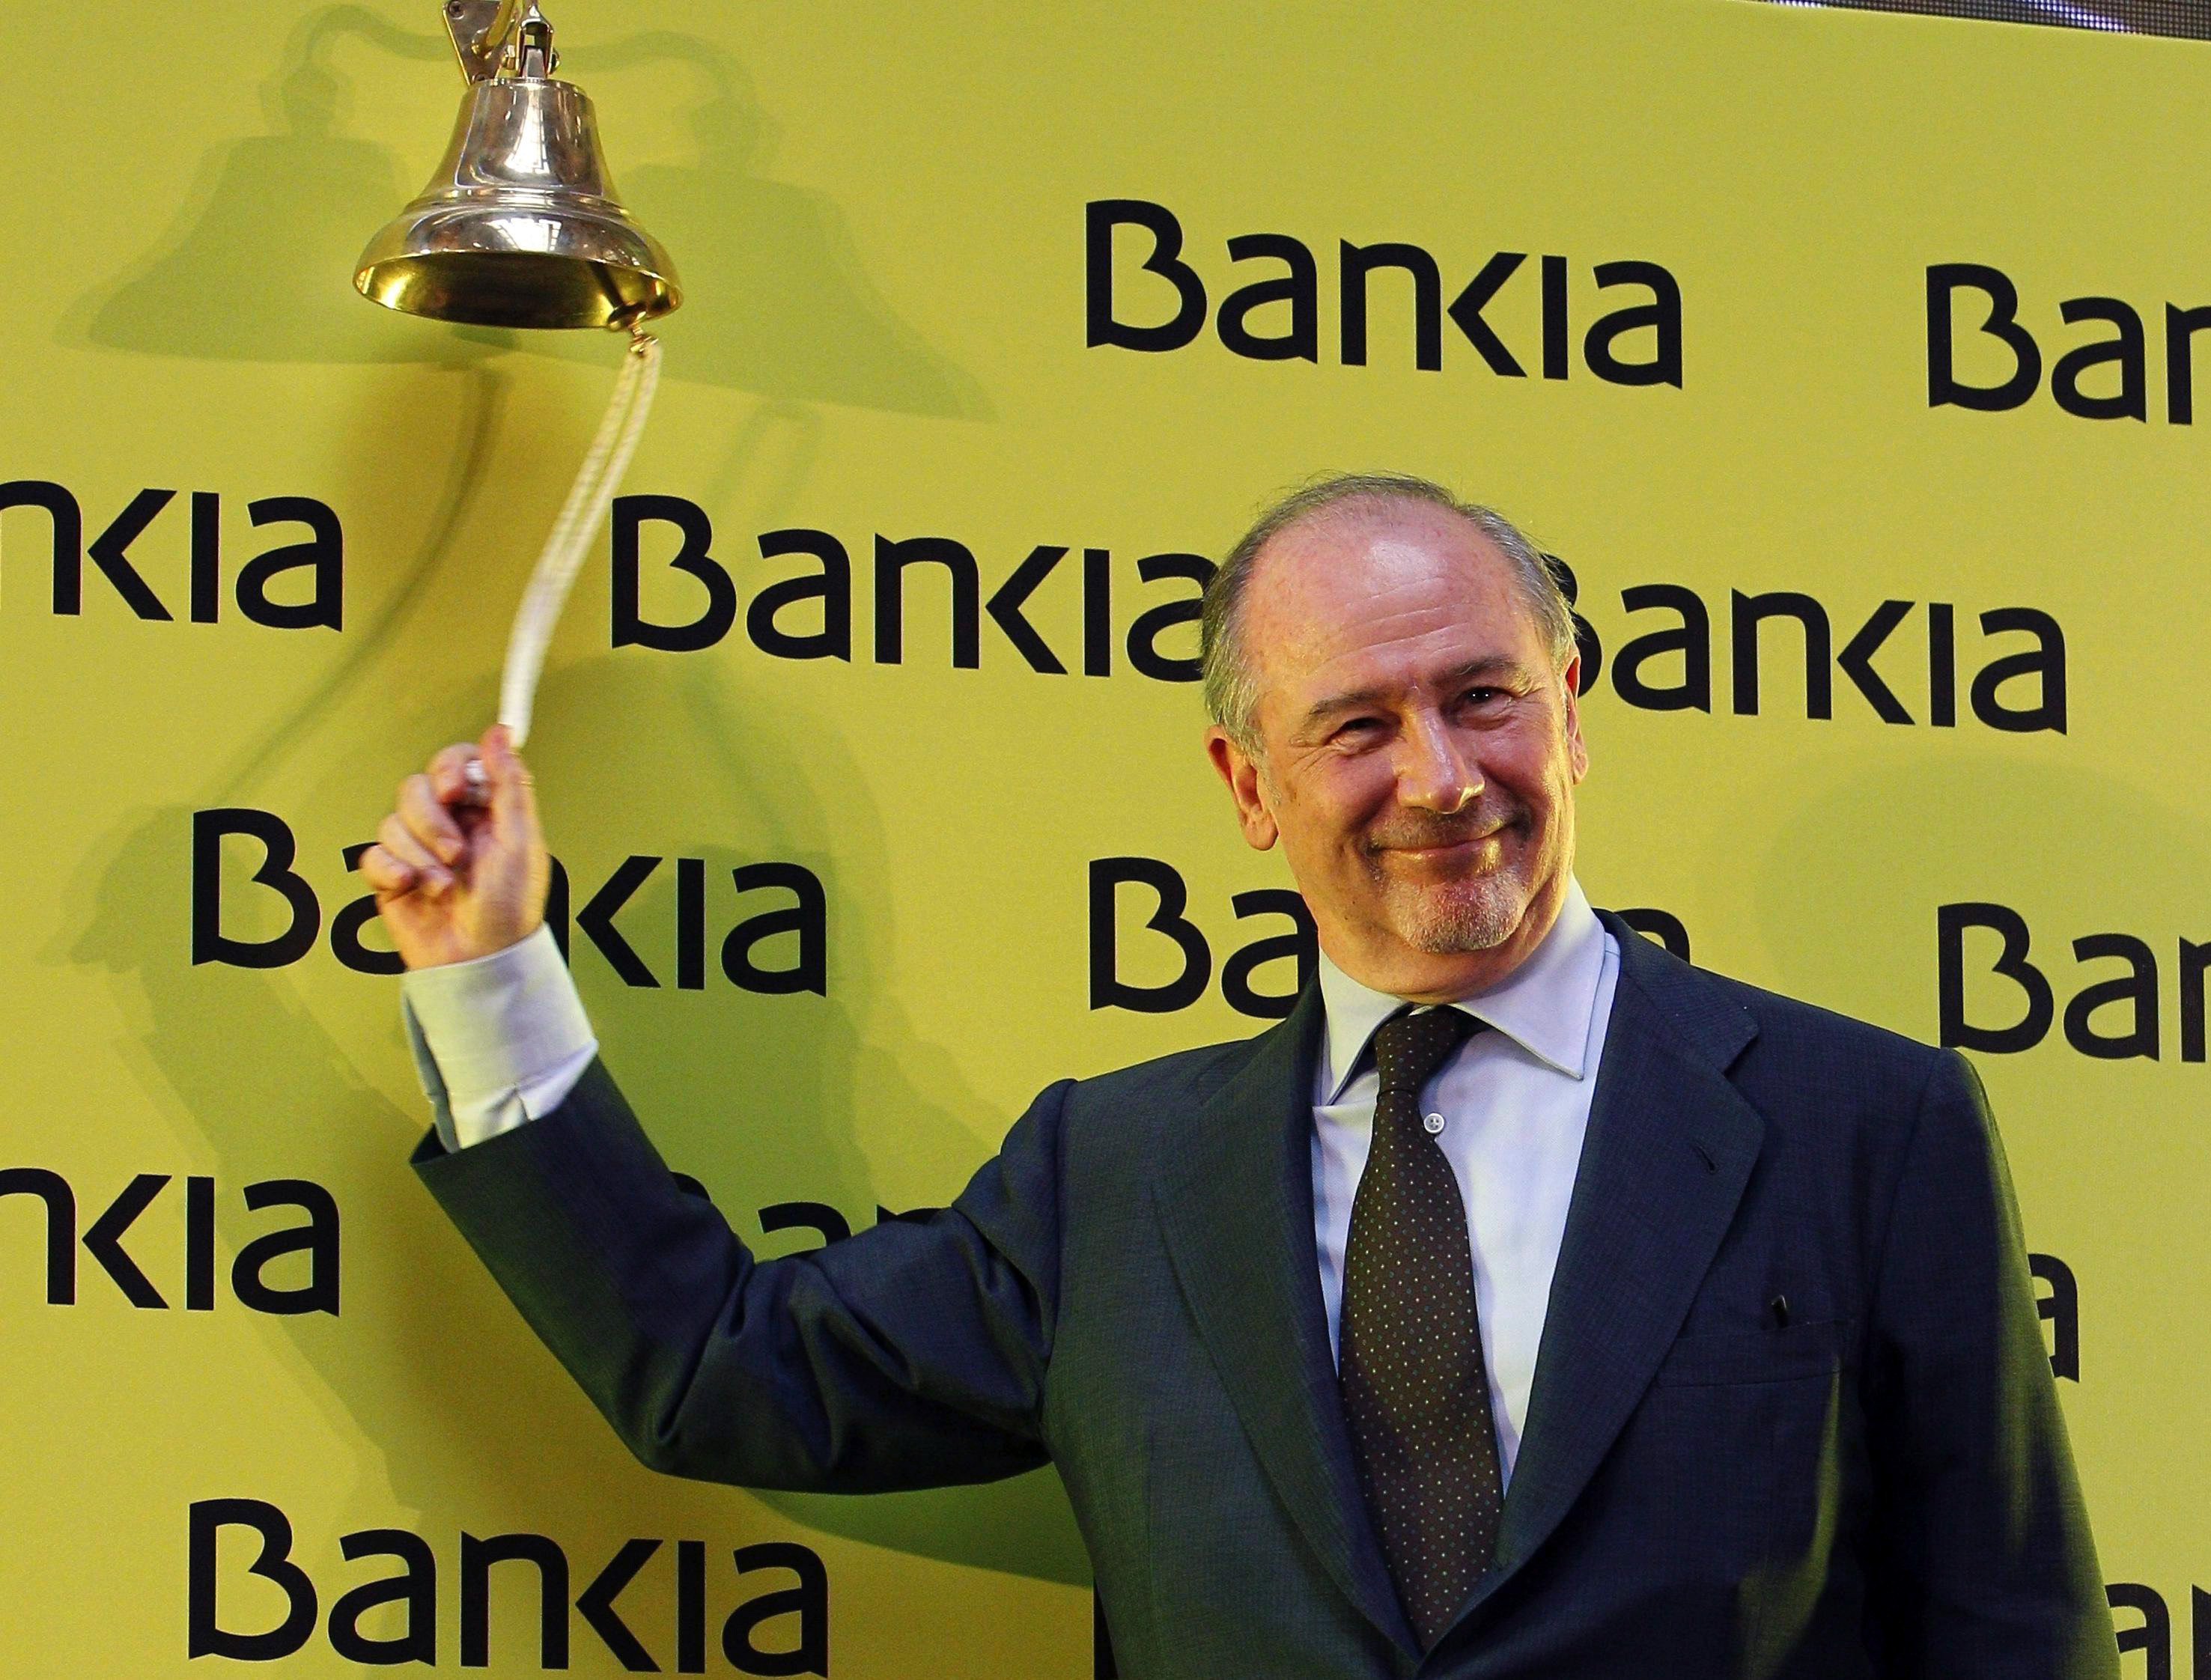 El Estado se quiere vender Bankia "tan pronto como sea posible"